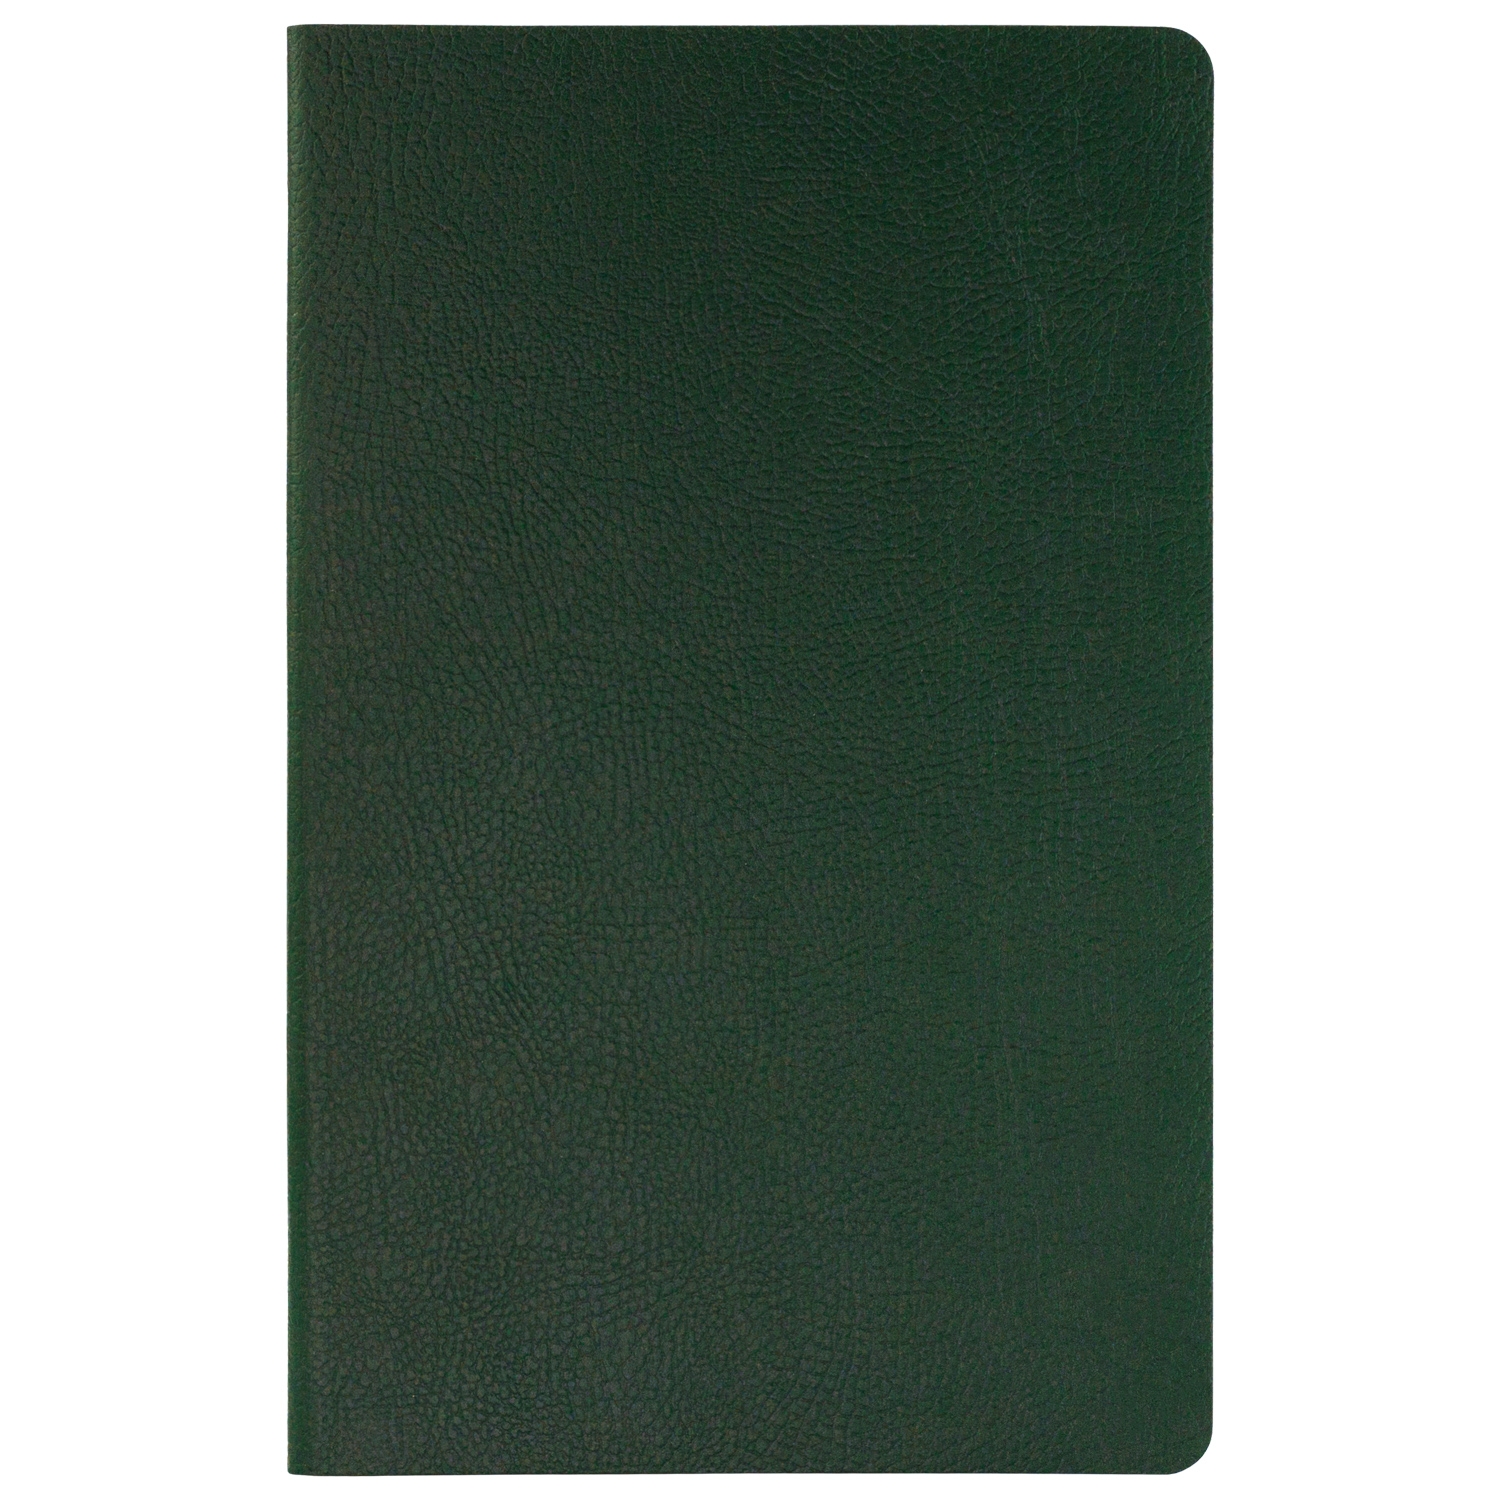 Ежедневник Slimbook Marseille недатированный без печати, зеленый (Sketchbook), зеленый